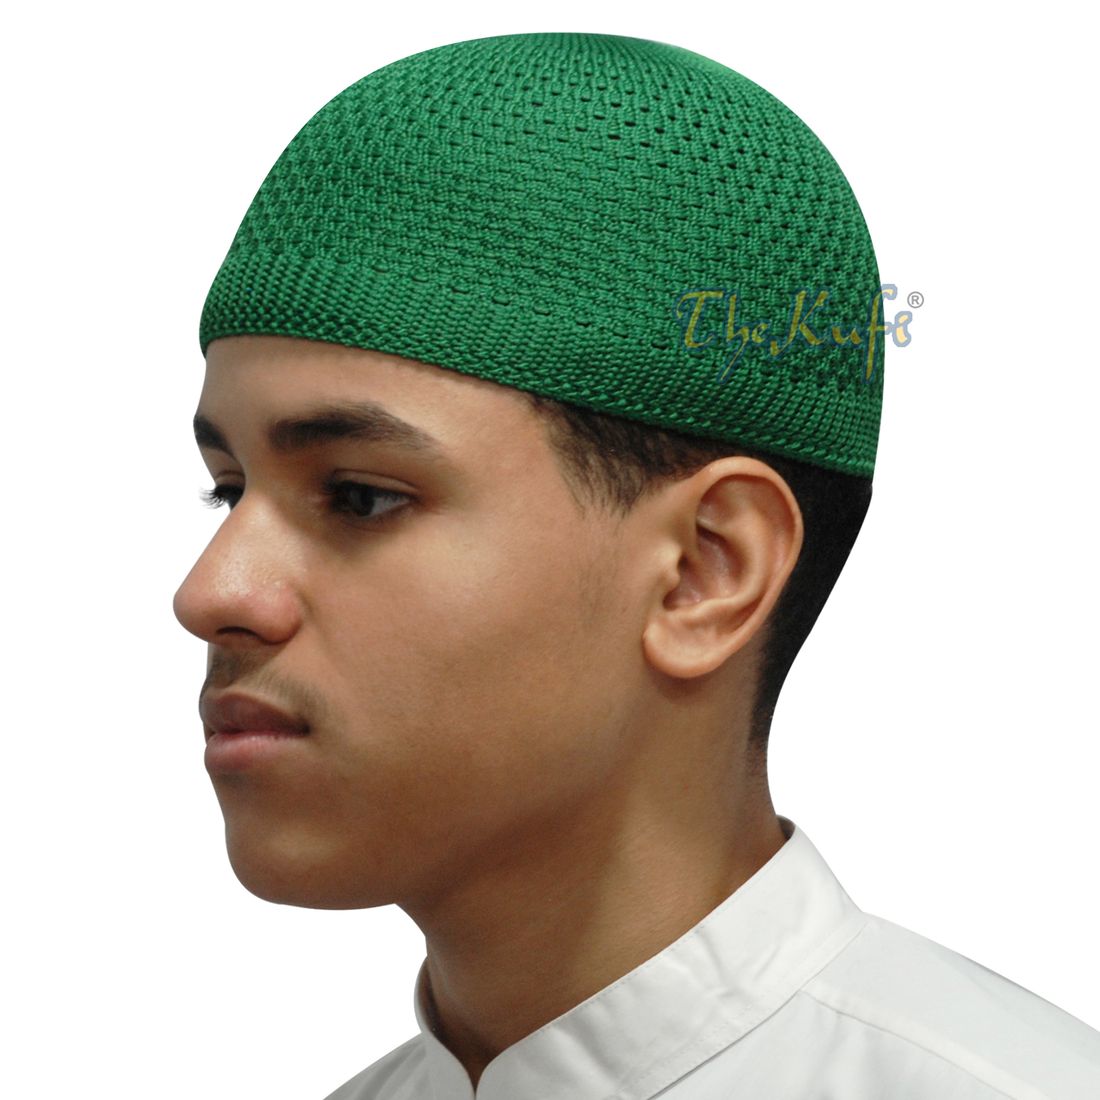 Madinah Green Nylon Kufi Cap Open-weave Knitted Head Cover Prayer Skullie